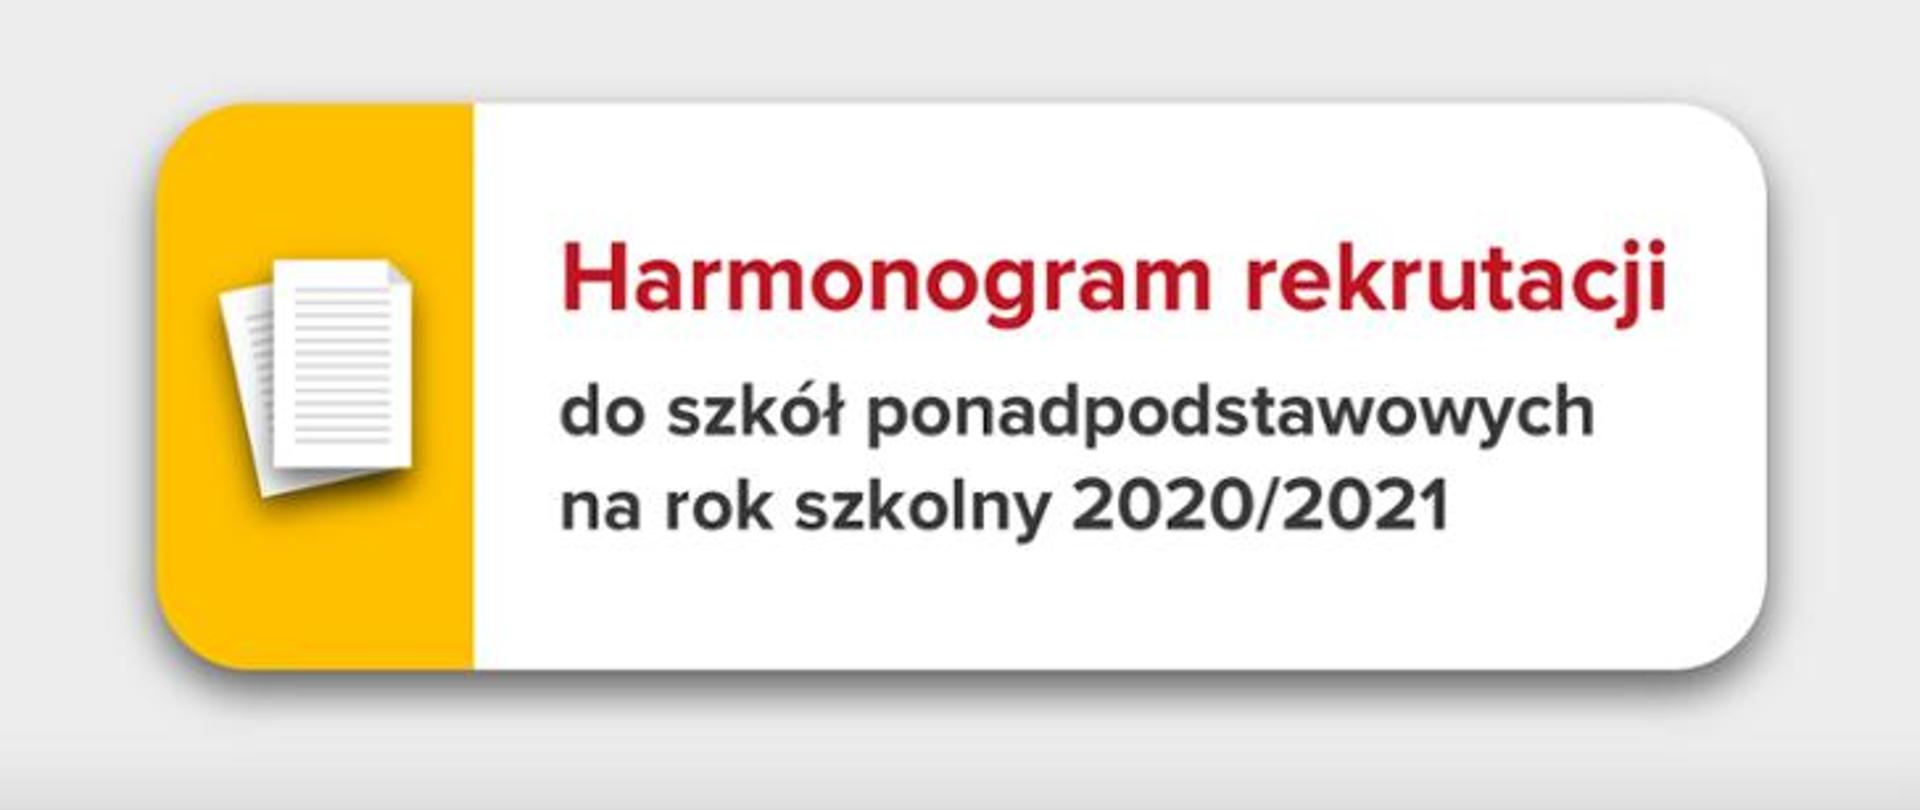 Harmonogram rekrutacji do szkół ponadpodstawowych na rok szkolny 2020-2021